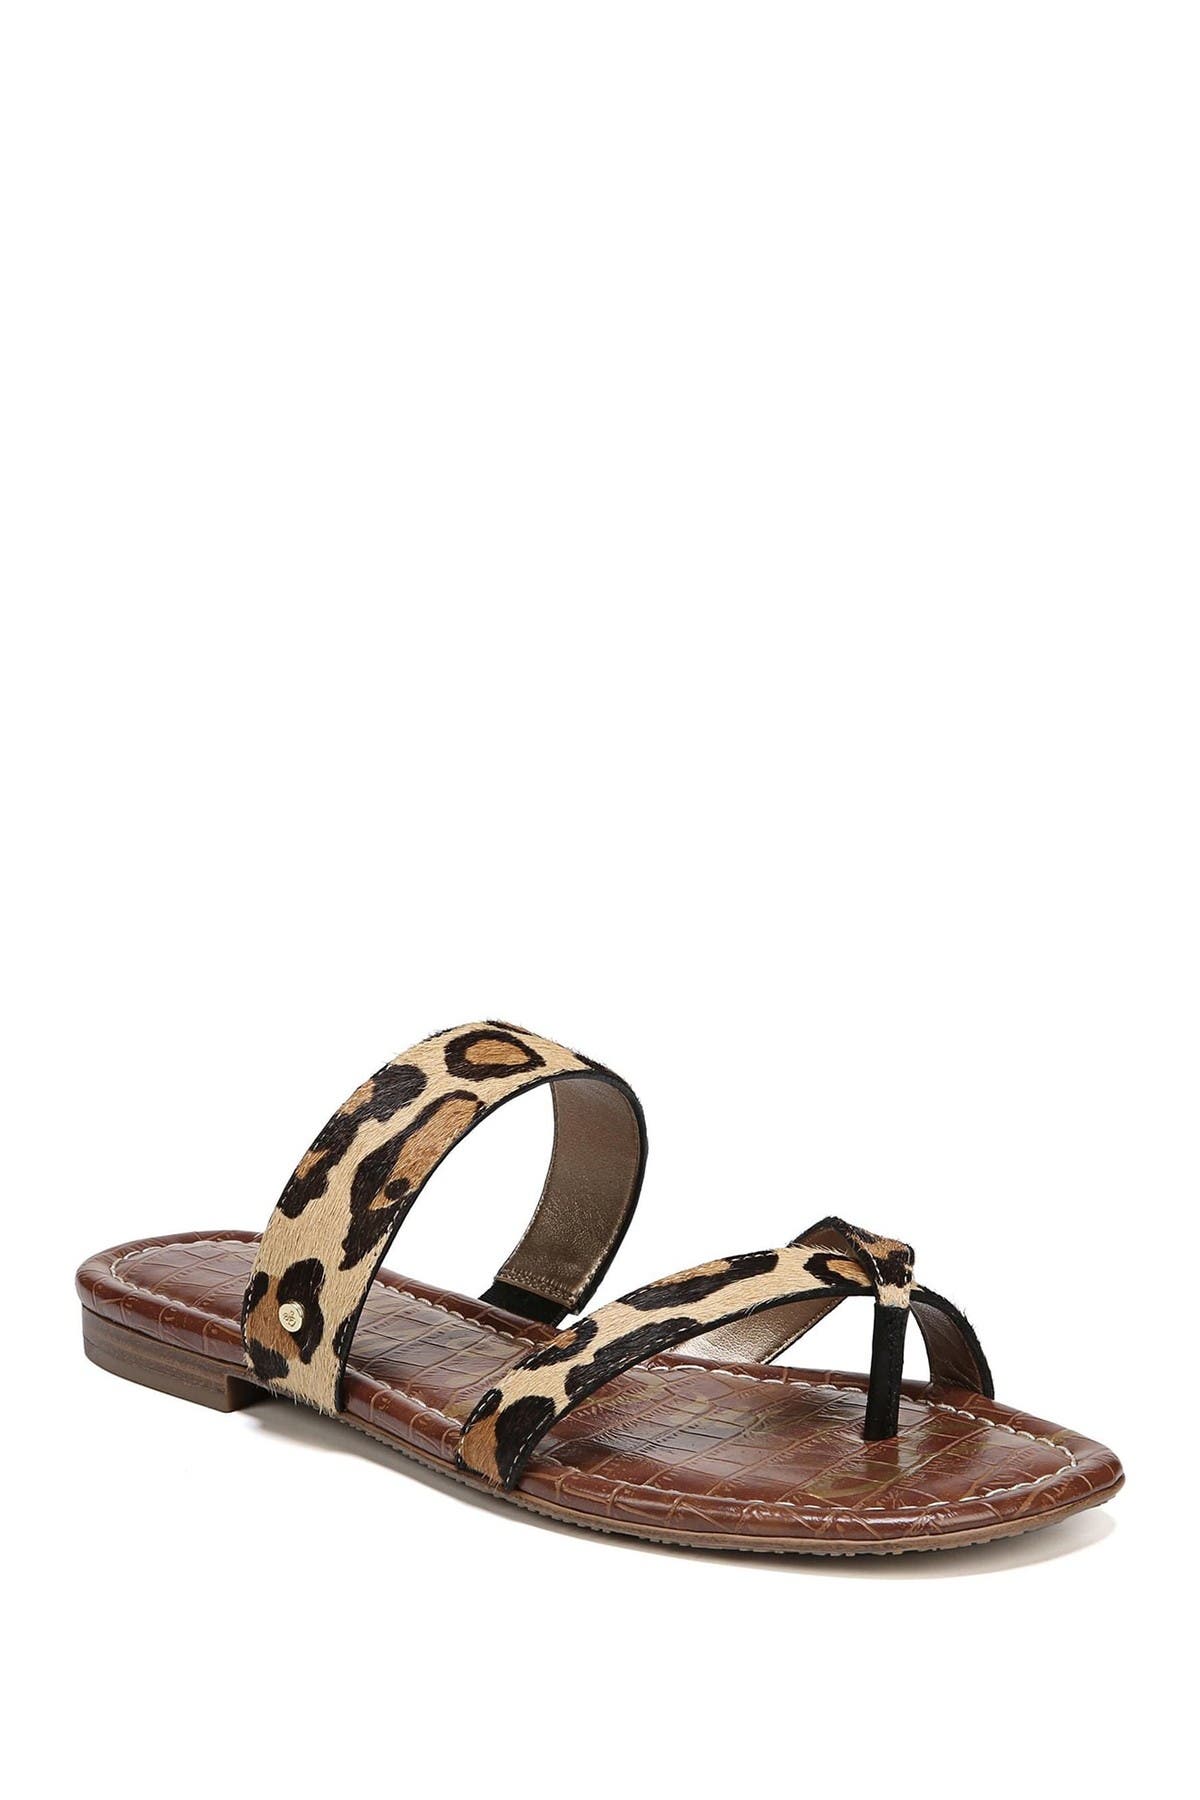 sam edelman bernice sandal leopard